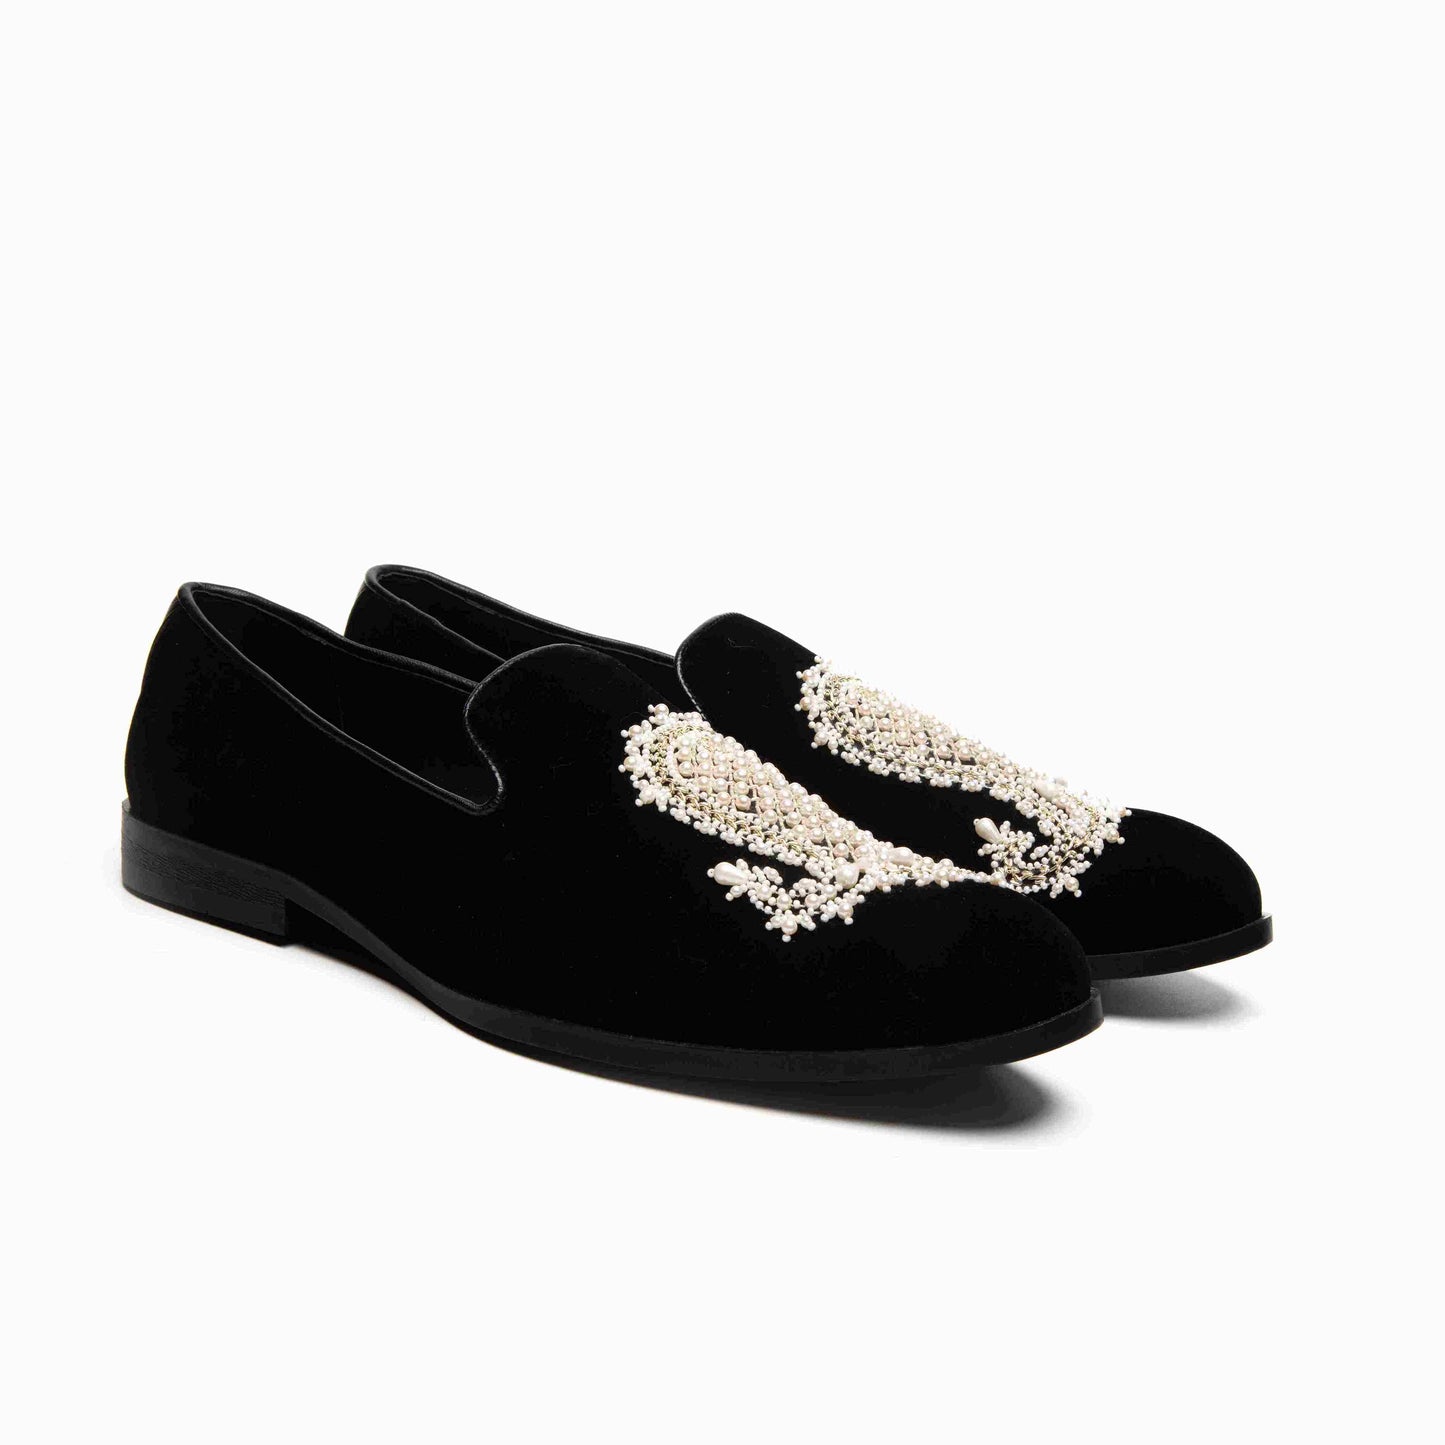 Black Velvet Embroidered Moccasin Shoes